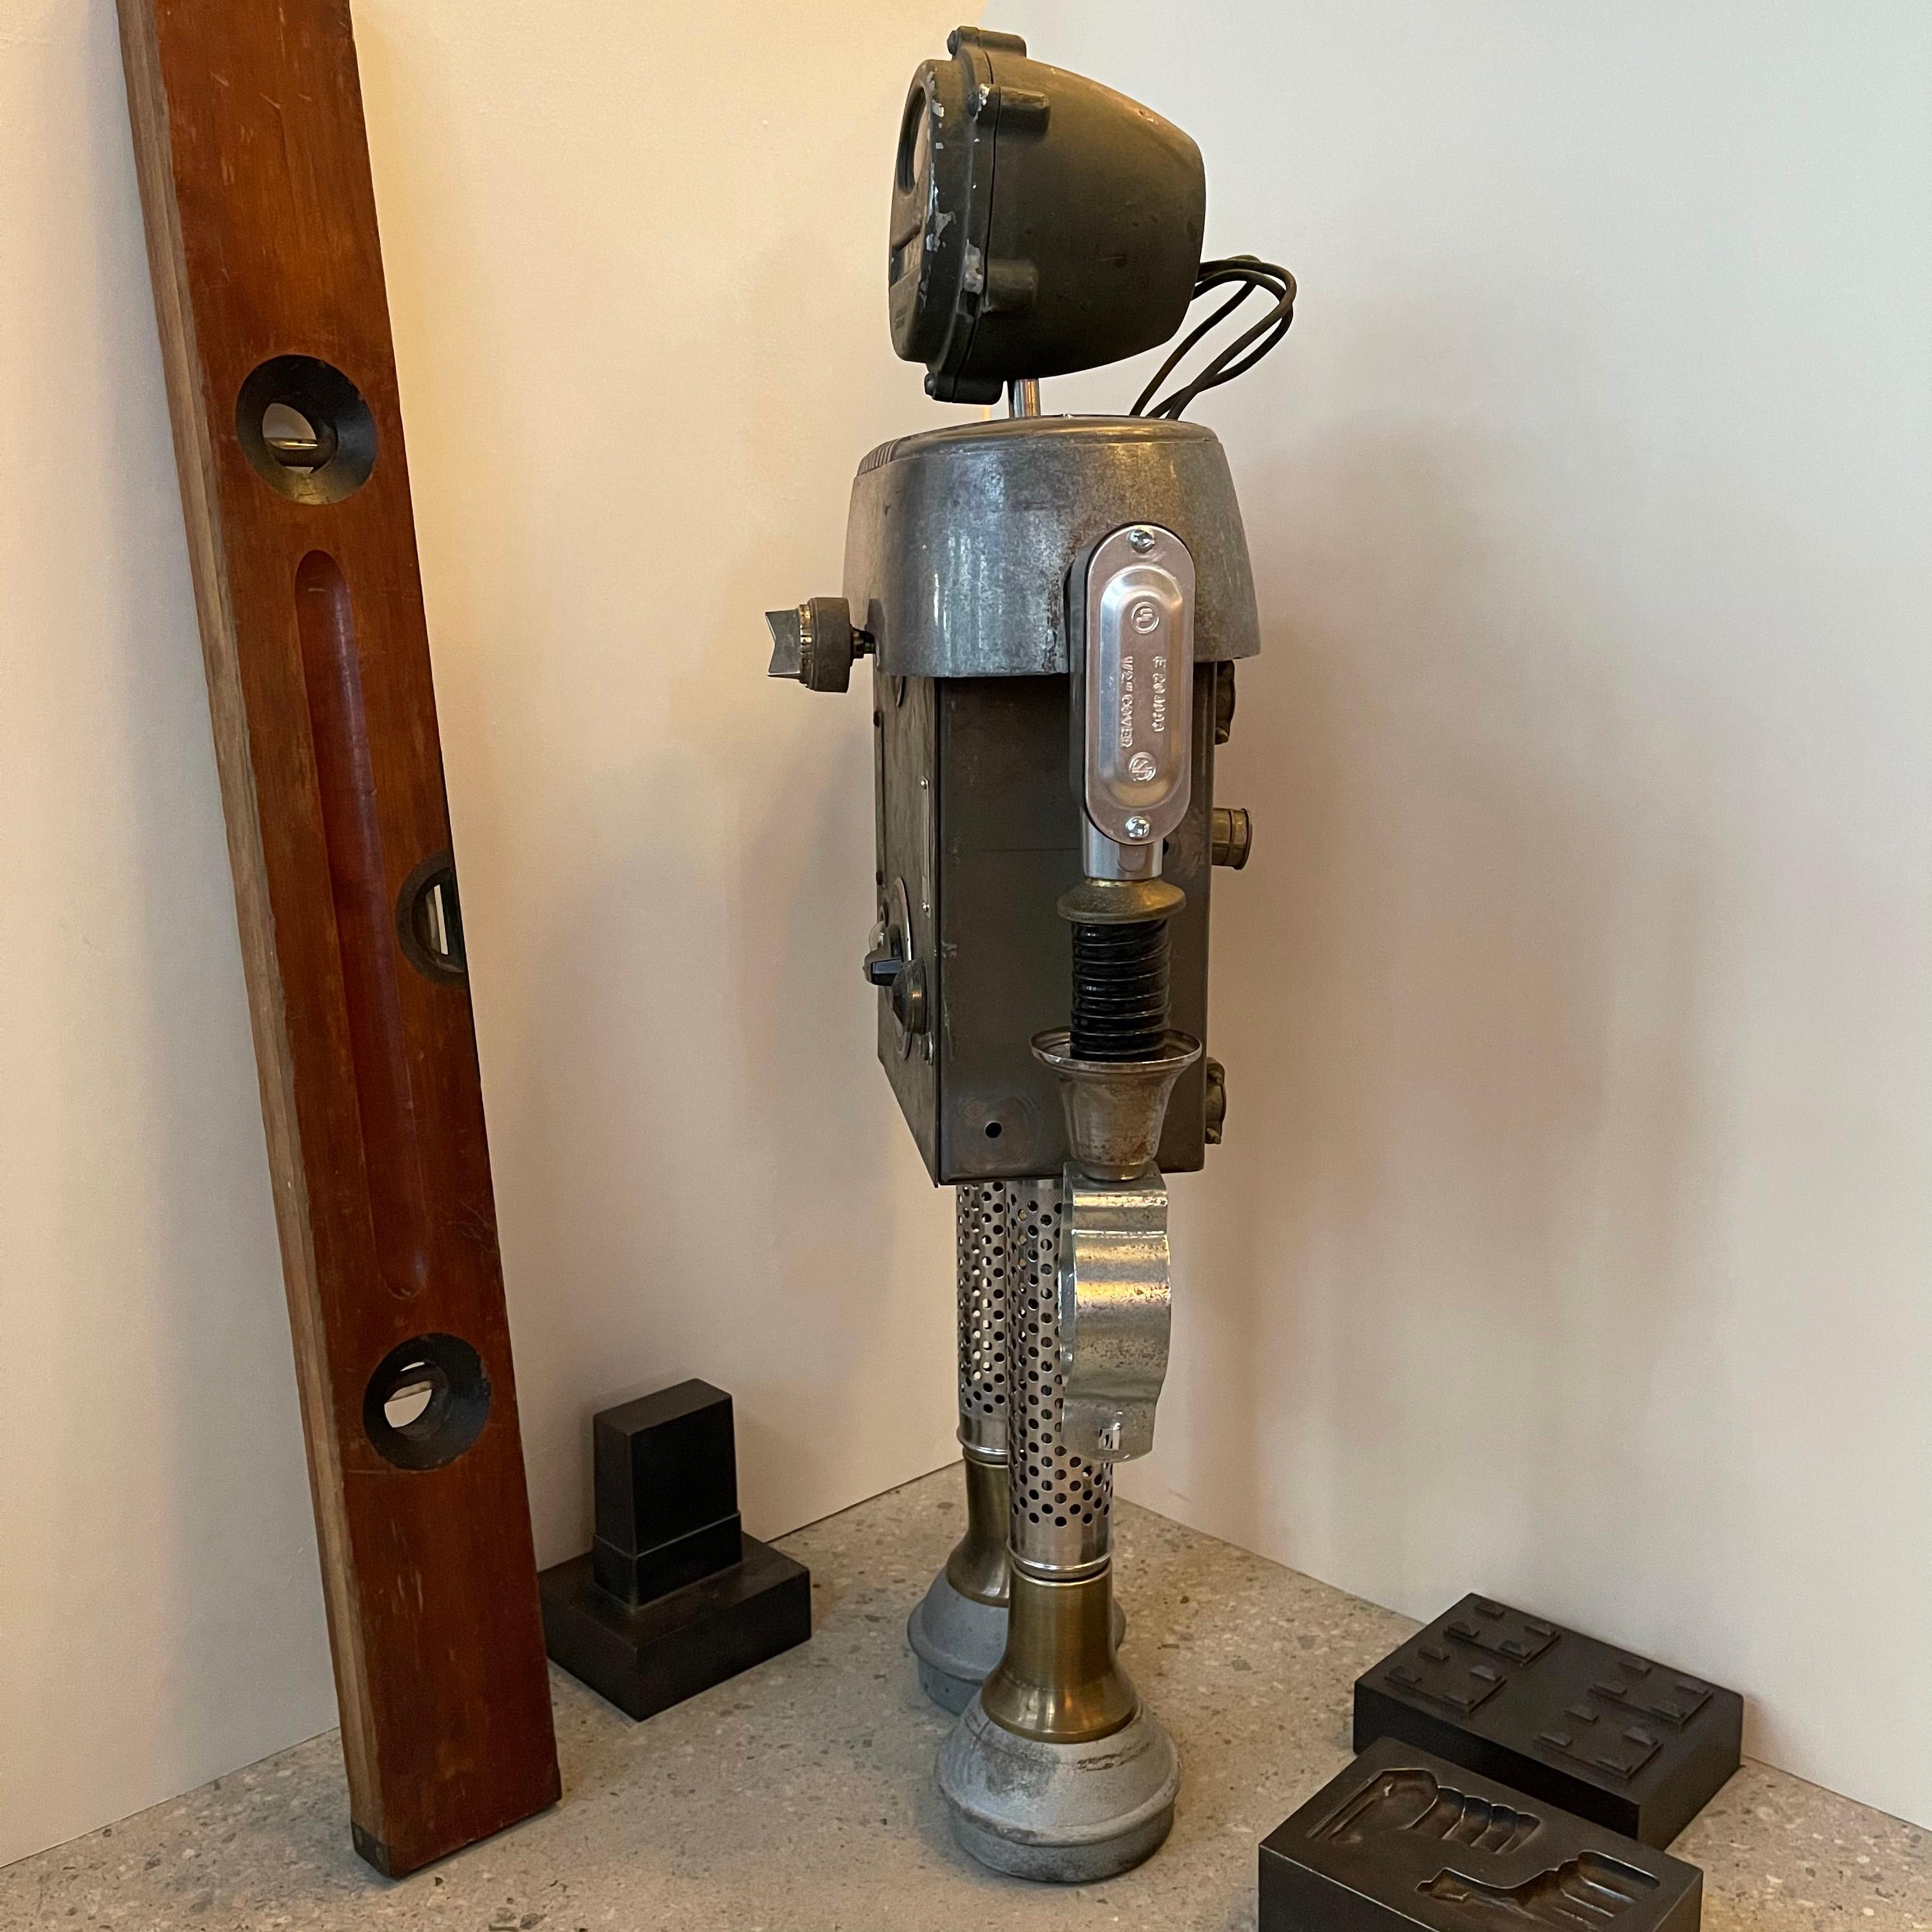 Machine Age R.R. Robot Sculpture by Bennett Robot Works